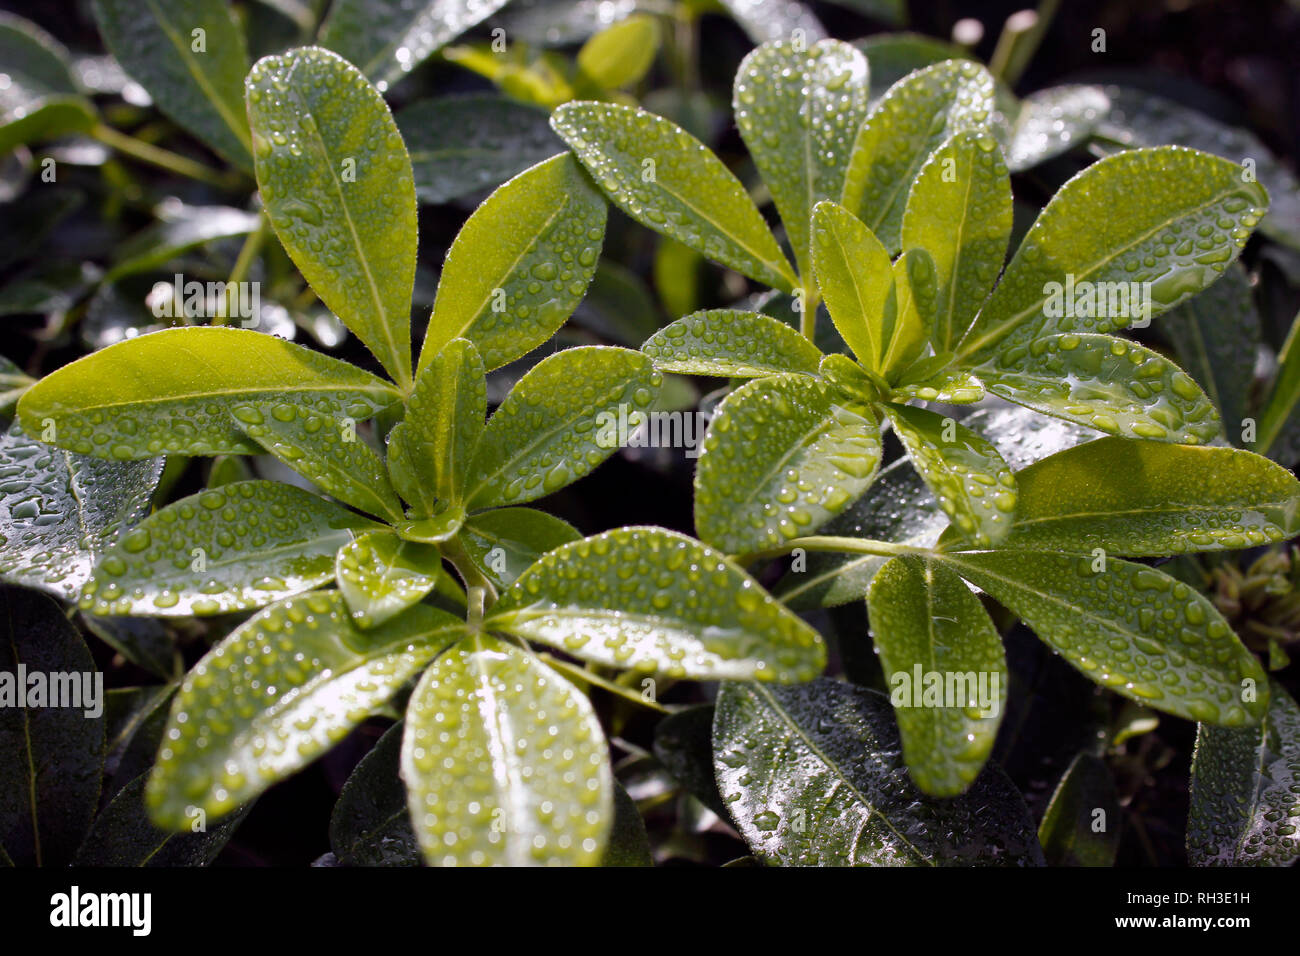 Fresh green shoots of Choisya ternata after an Autumn shower Stock Photo